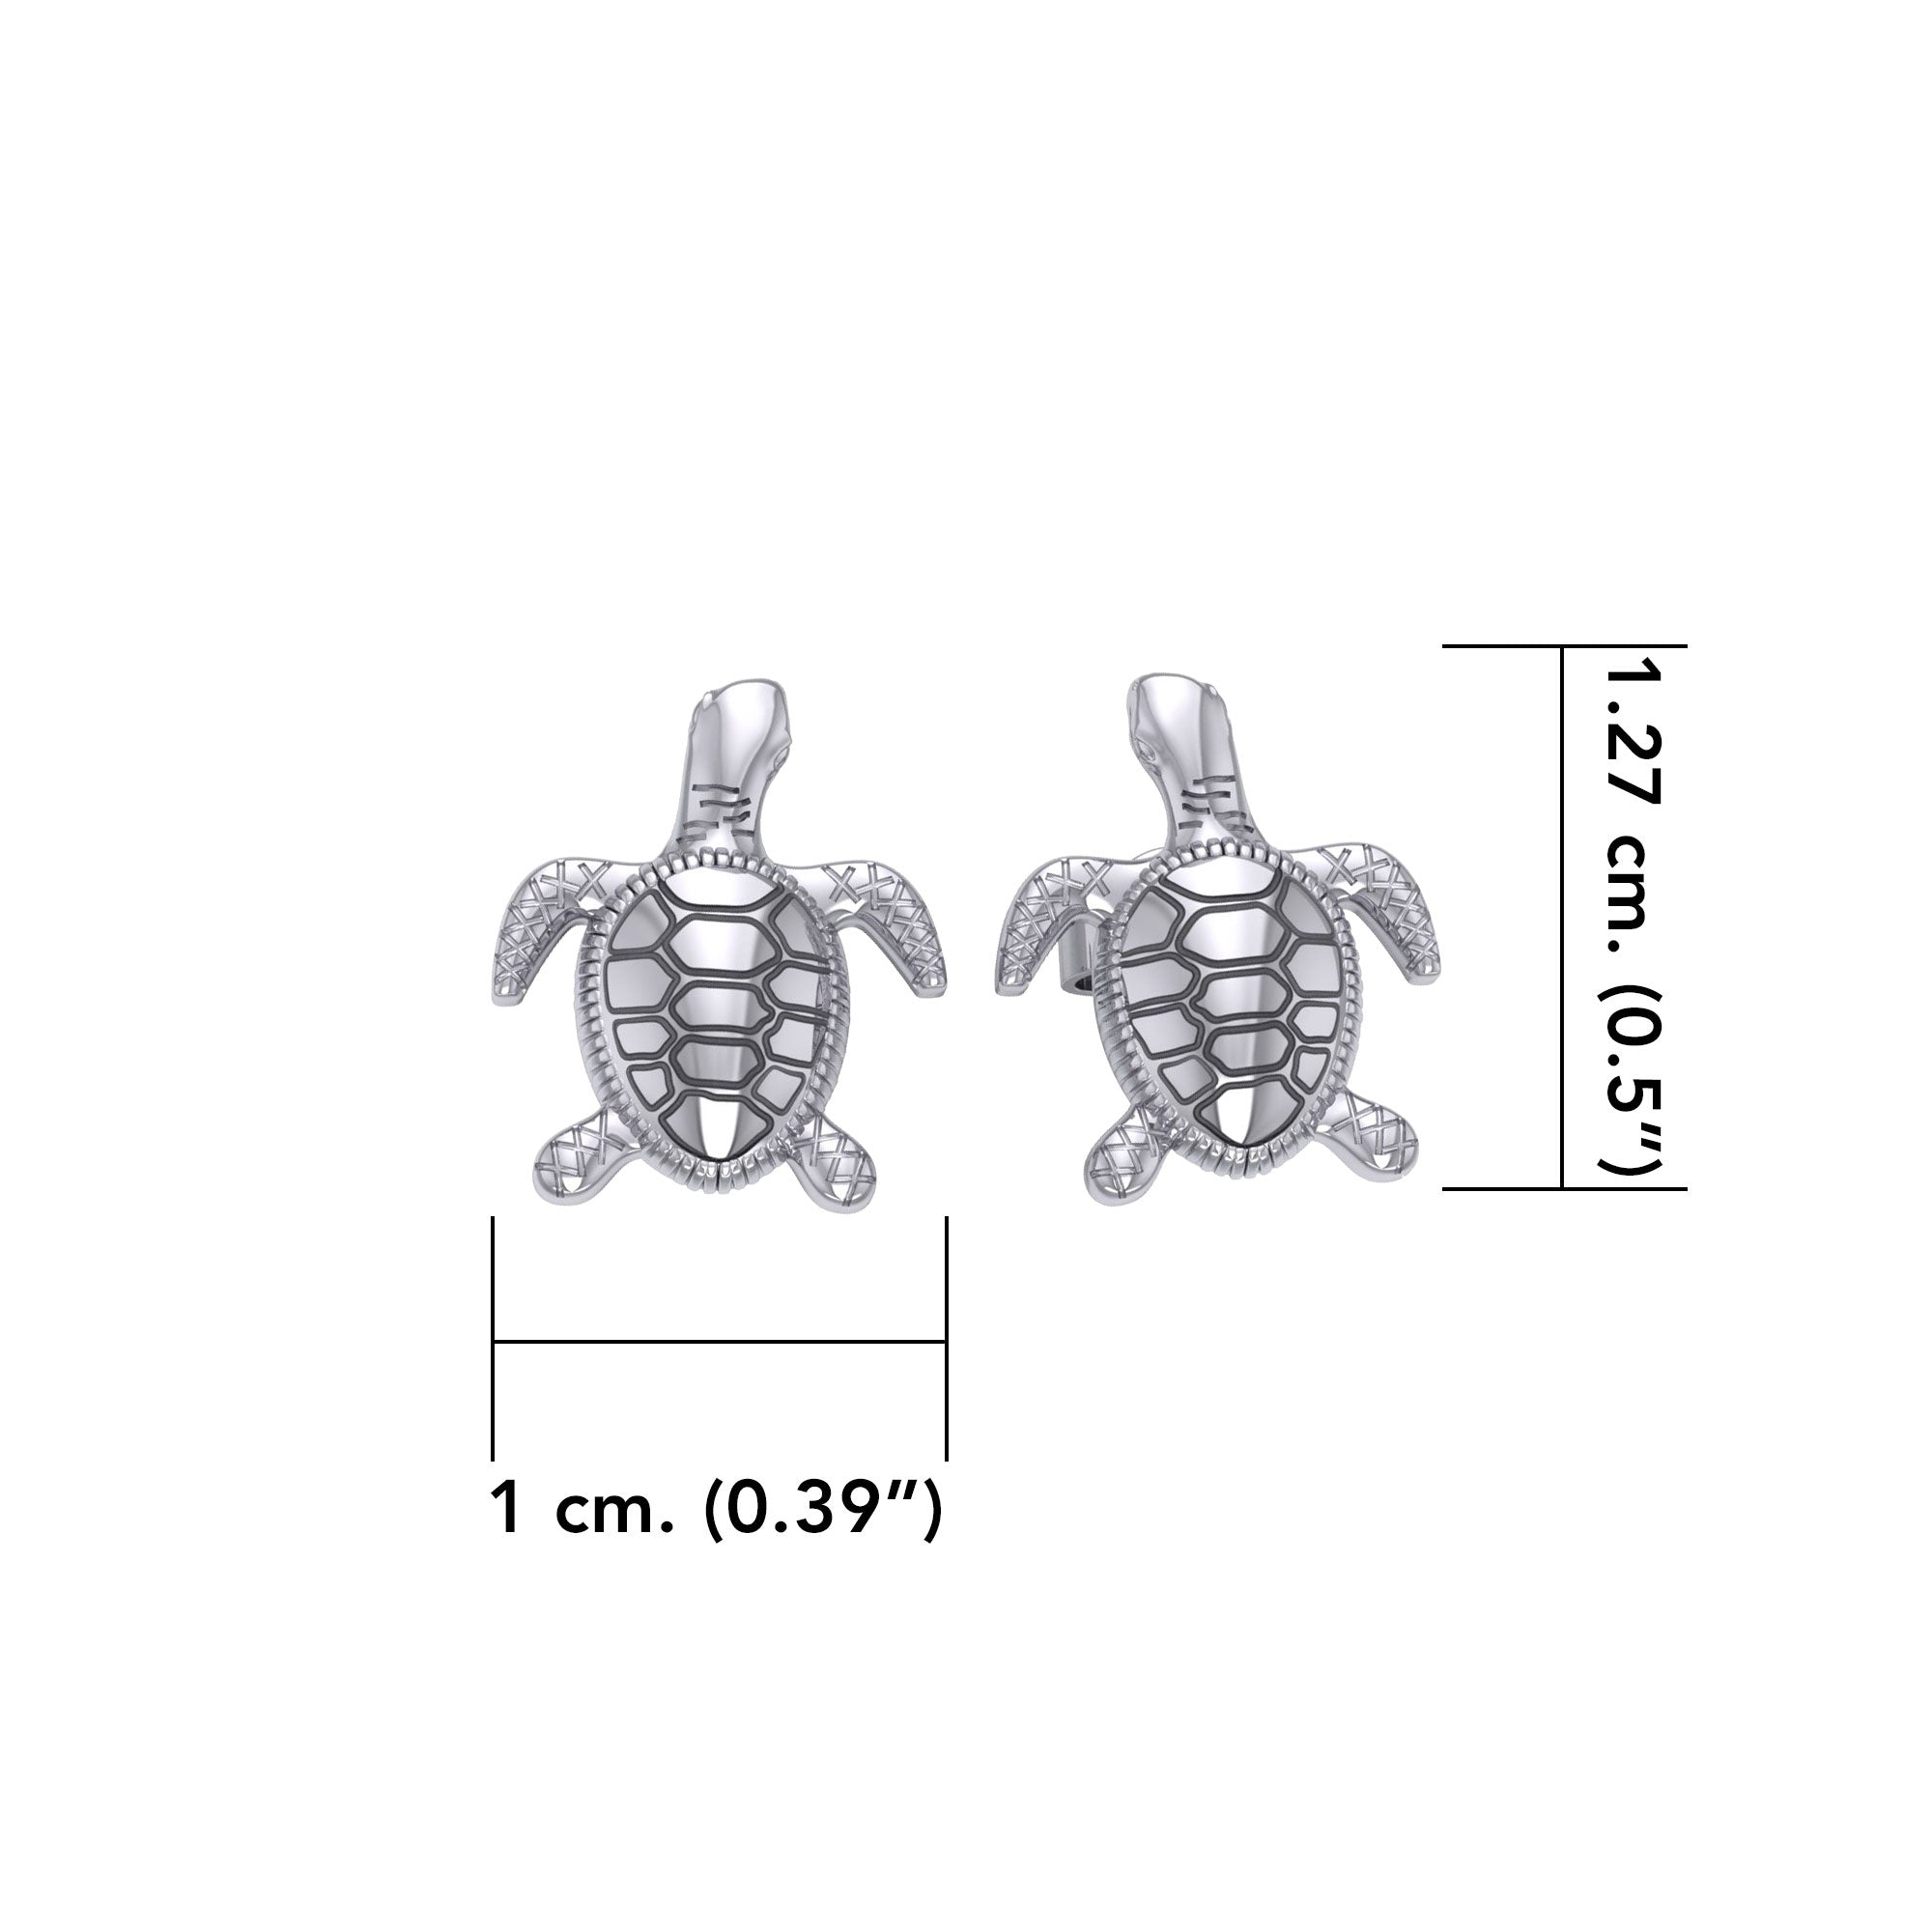 Turtle Sterling Silver Post Earring JE206